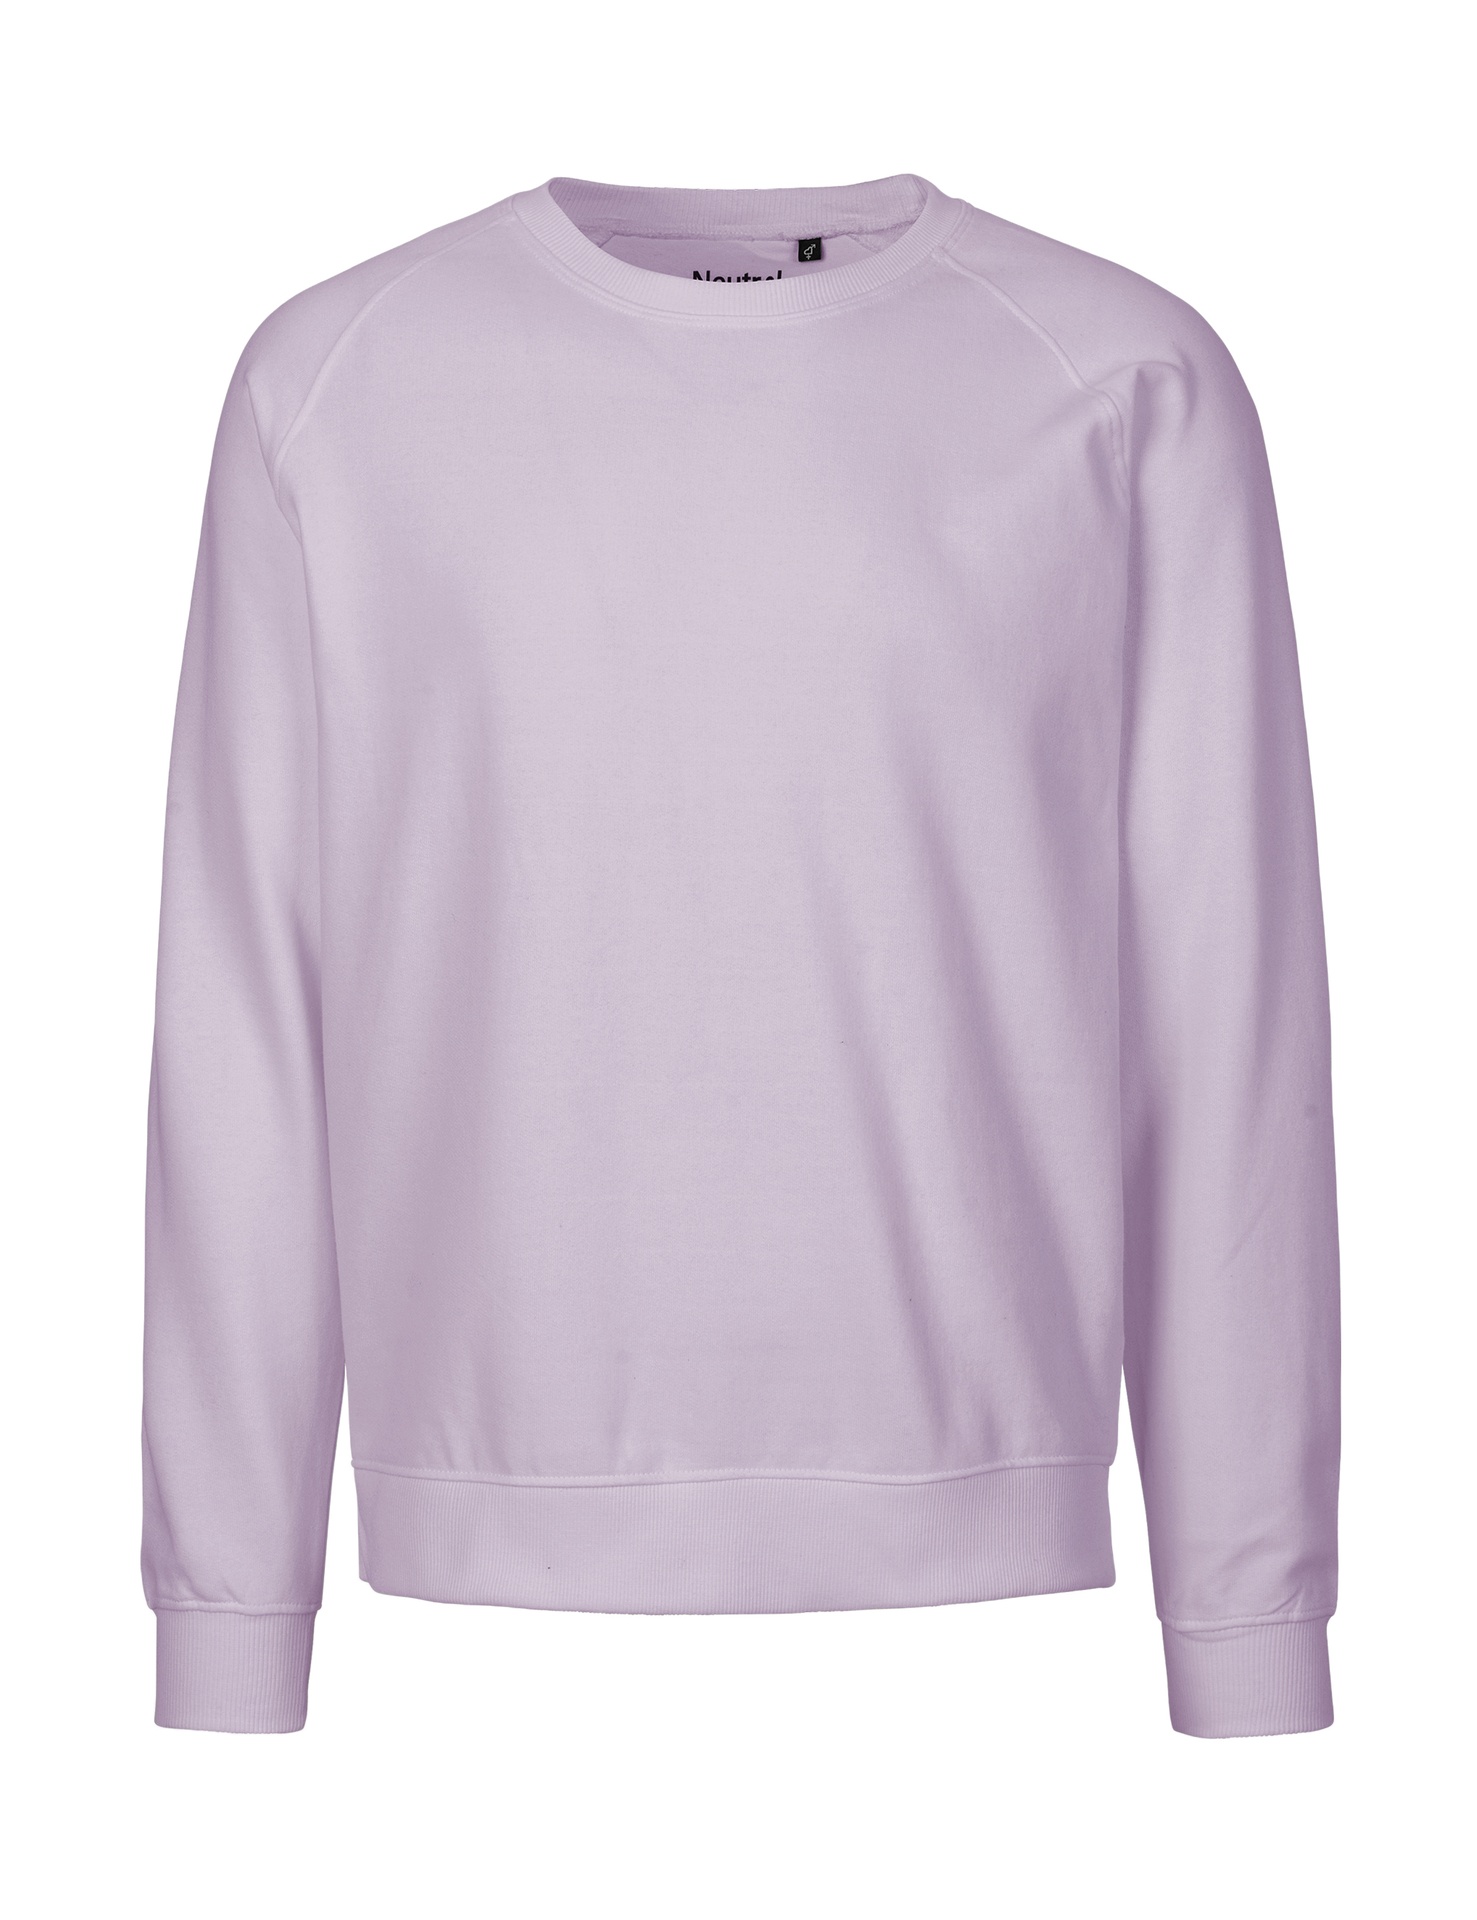 [PR/02849] Unisex Sweatshirt (Dusty Purple 42, 5XL)